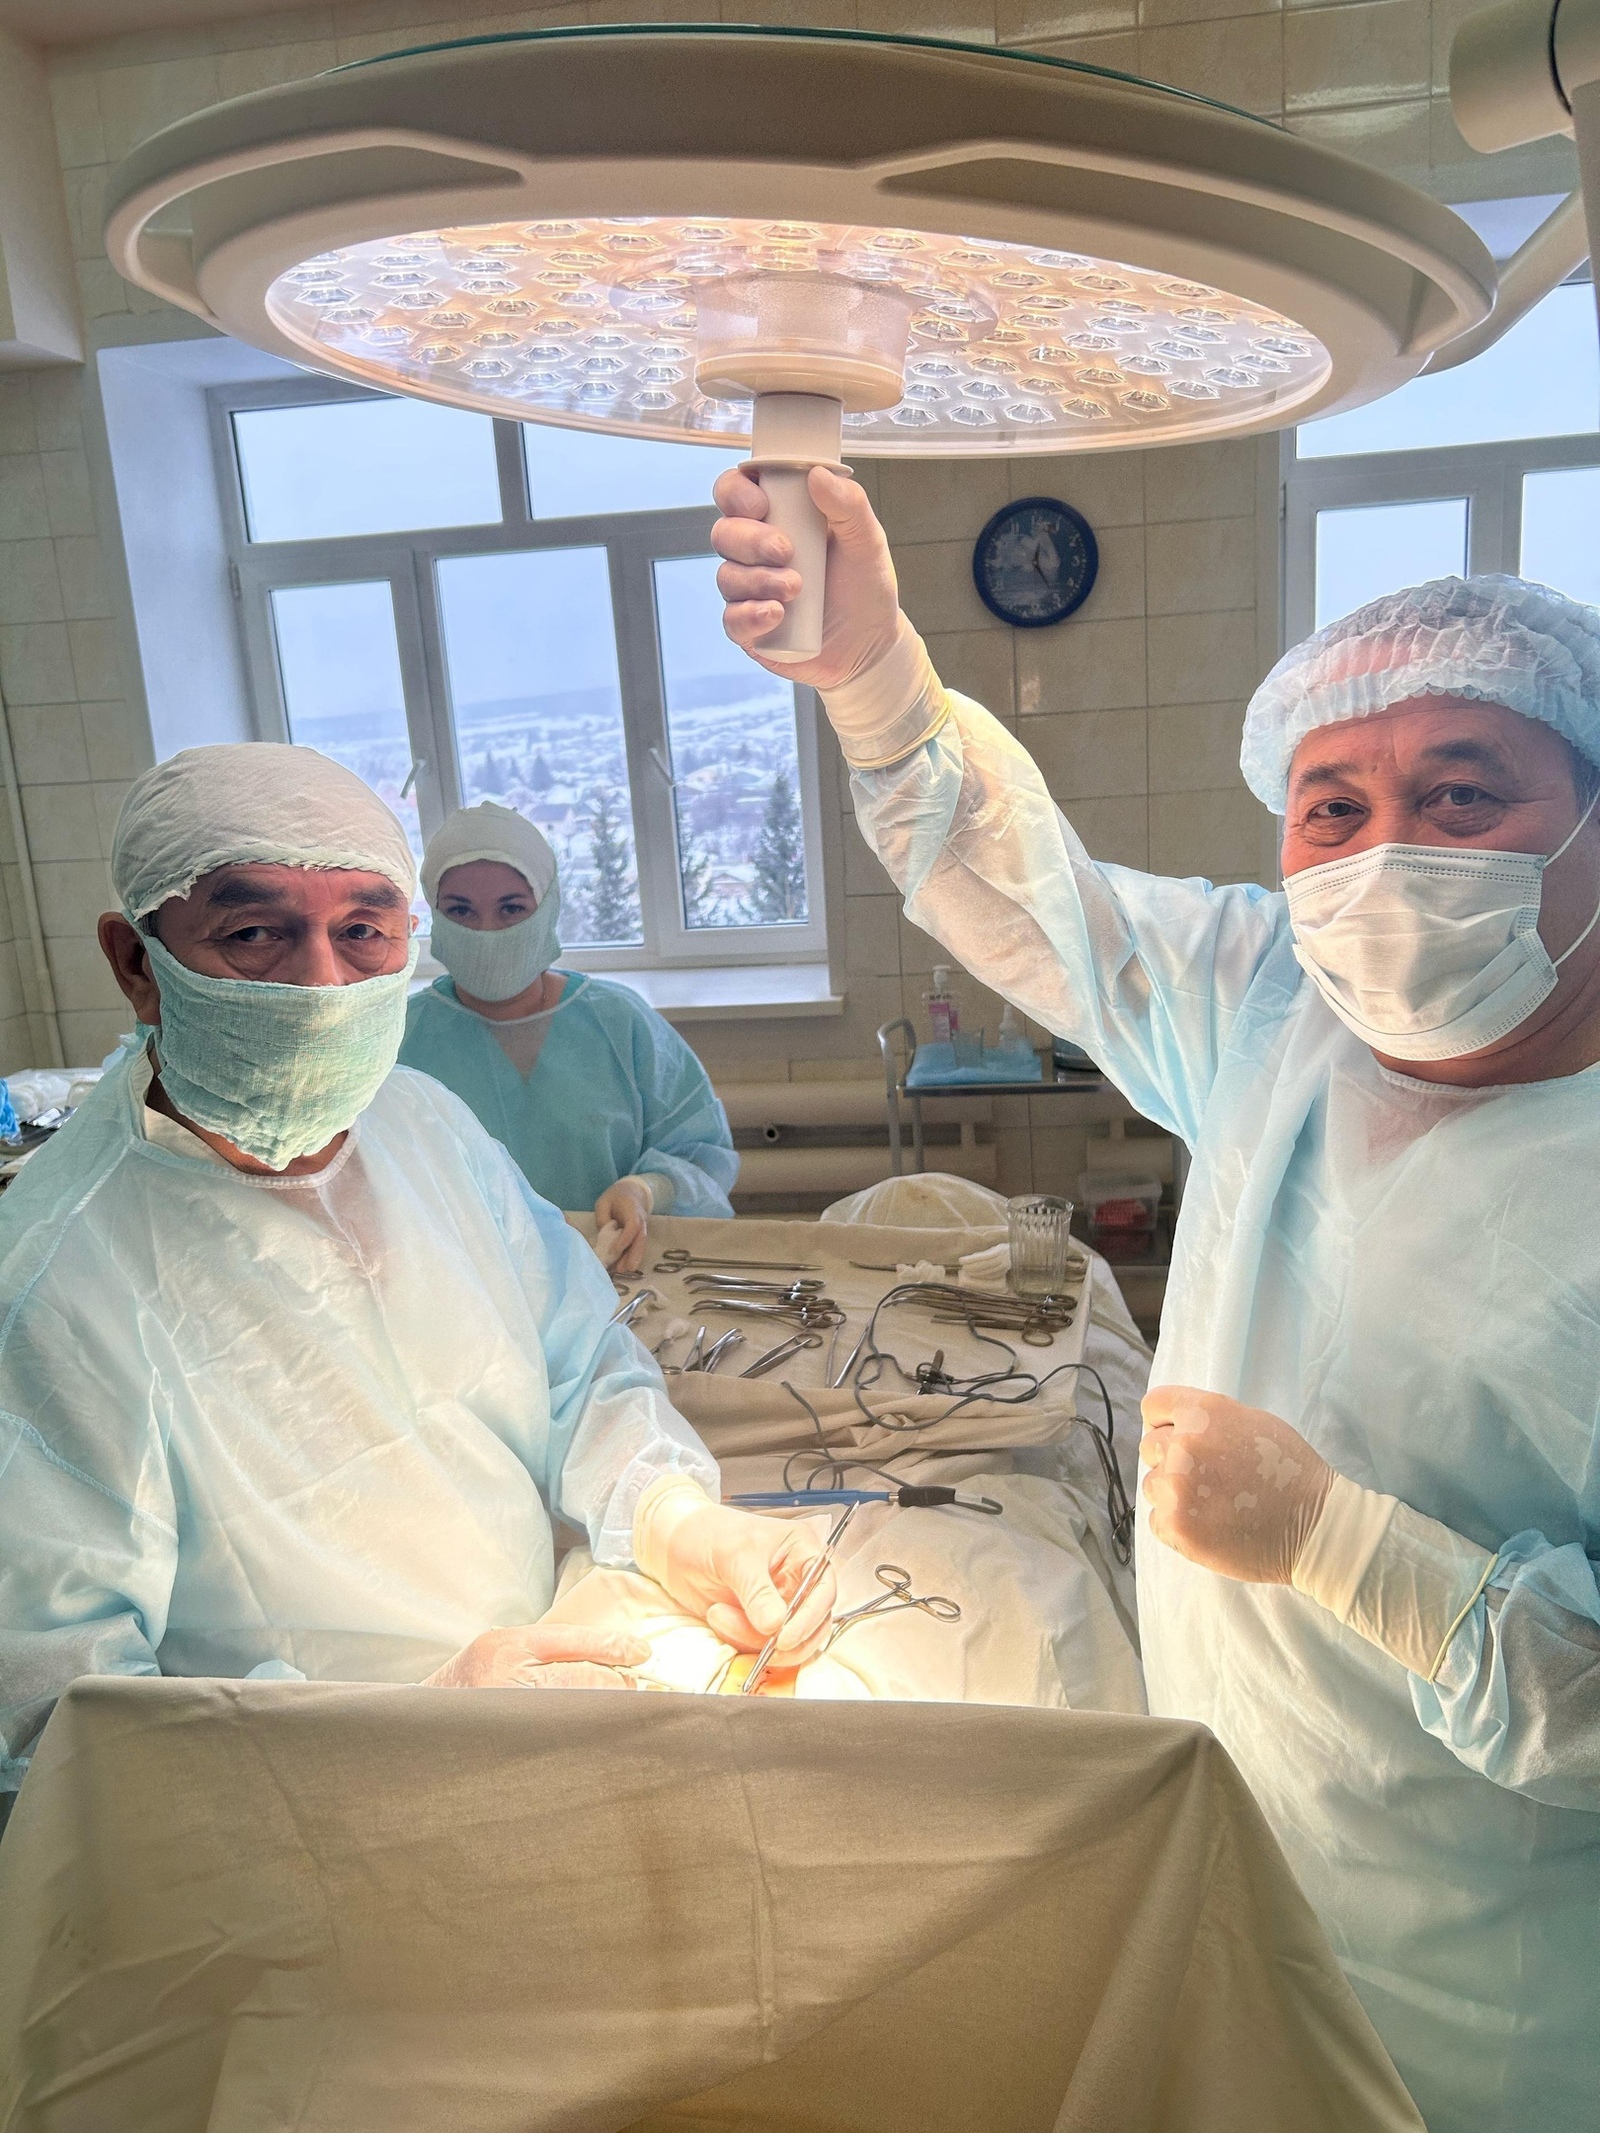 Хорошее подспорье в работе: в хирургическое отделение Красноусольской ЦРБ благодаря спонсорский помощи поступило новое оборудование